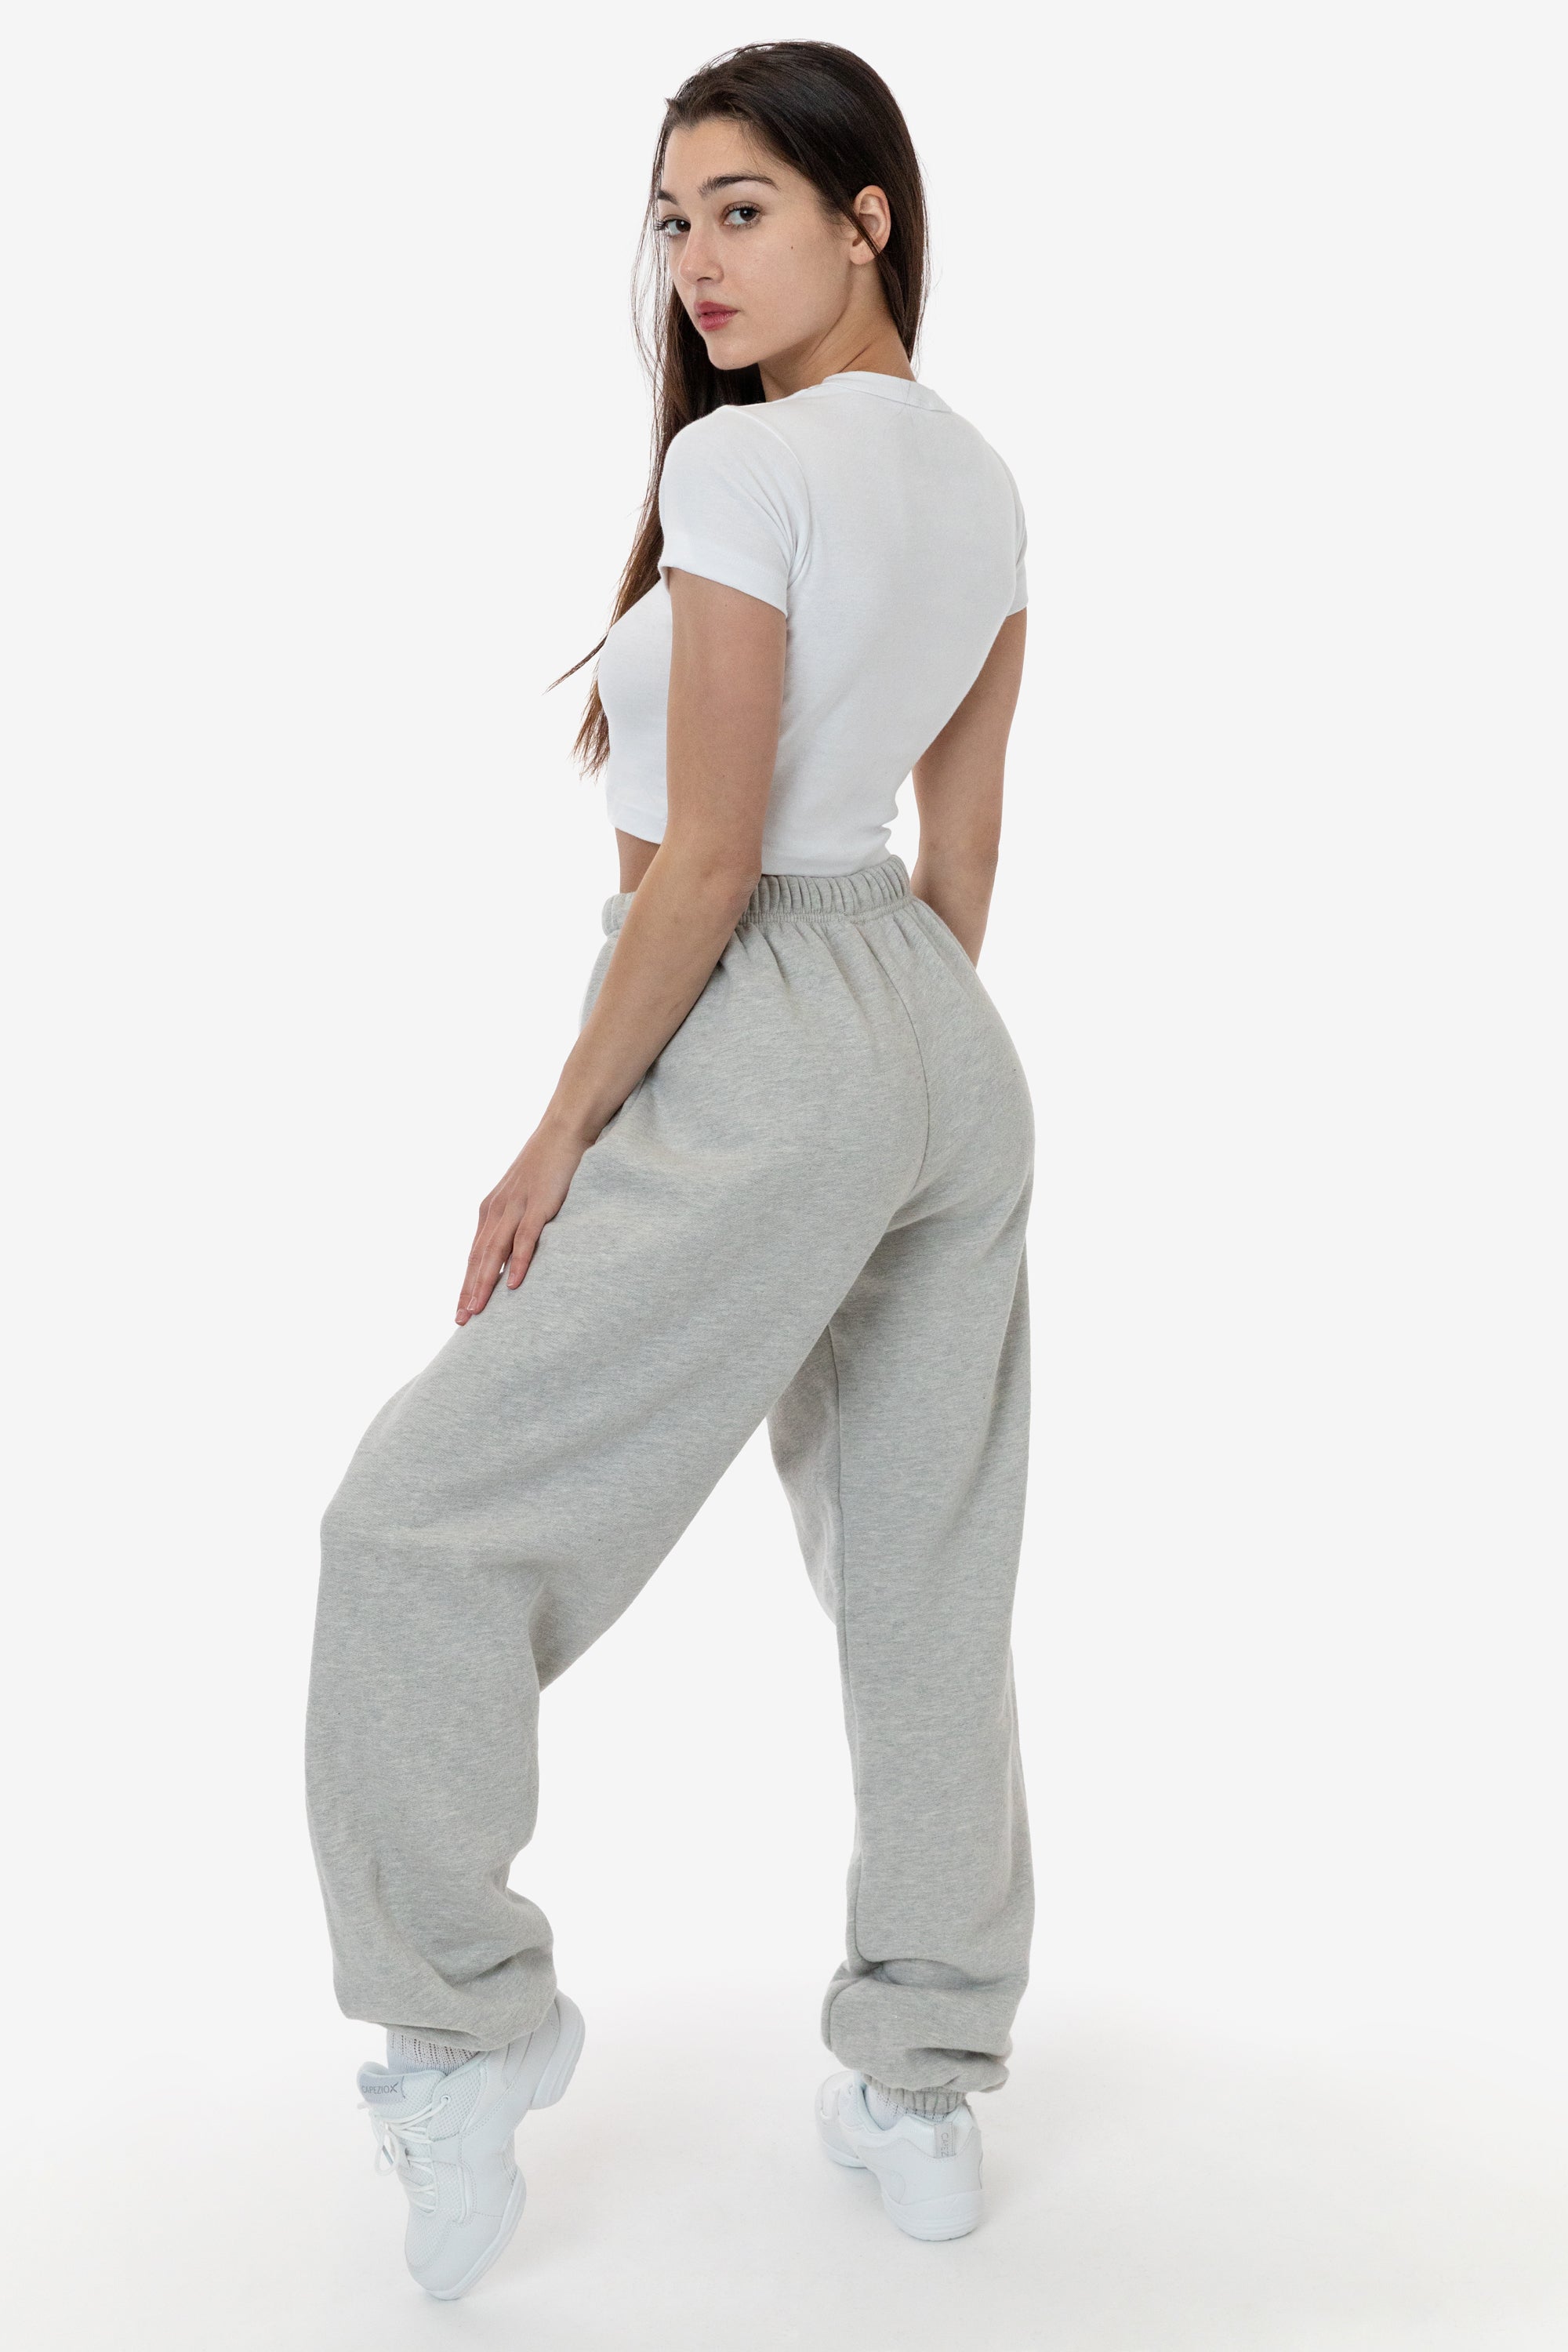 Premium Velvet Joggers for Women - Ultra-Soft Warm Velour Pants